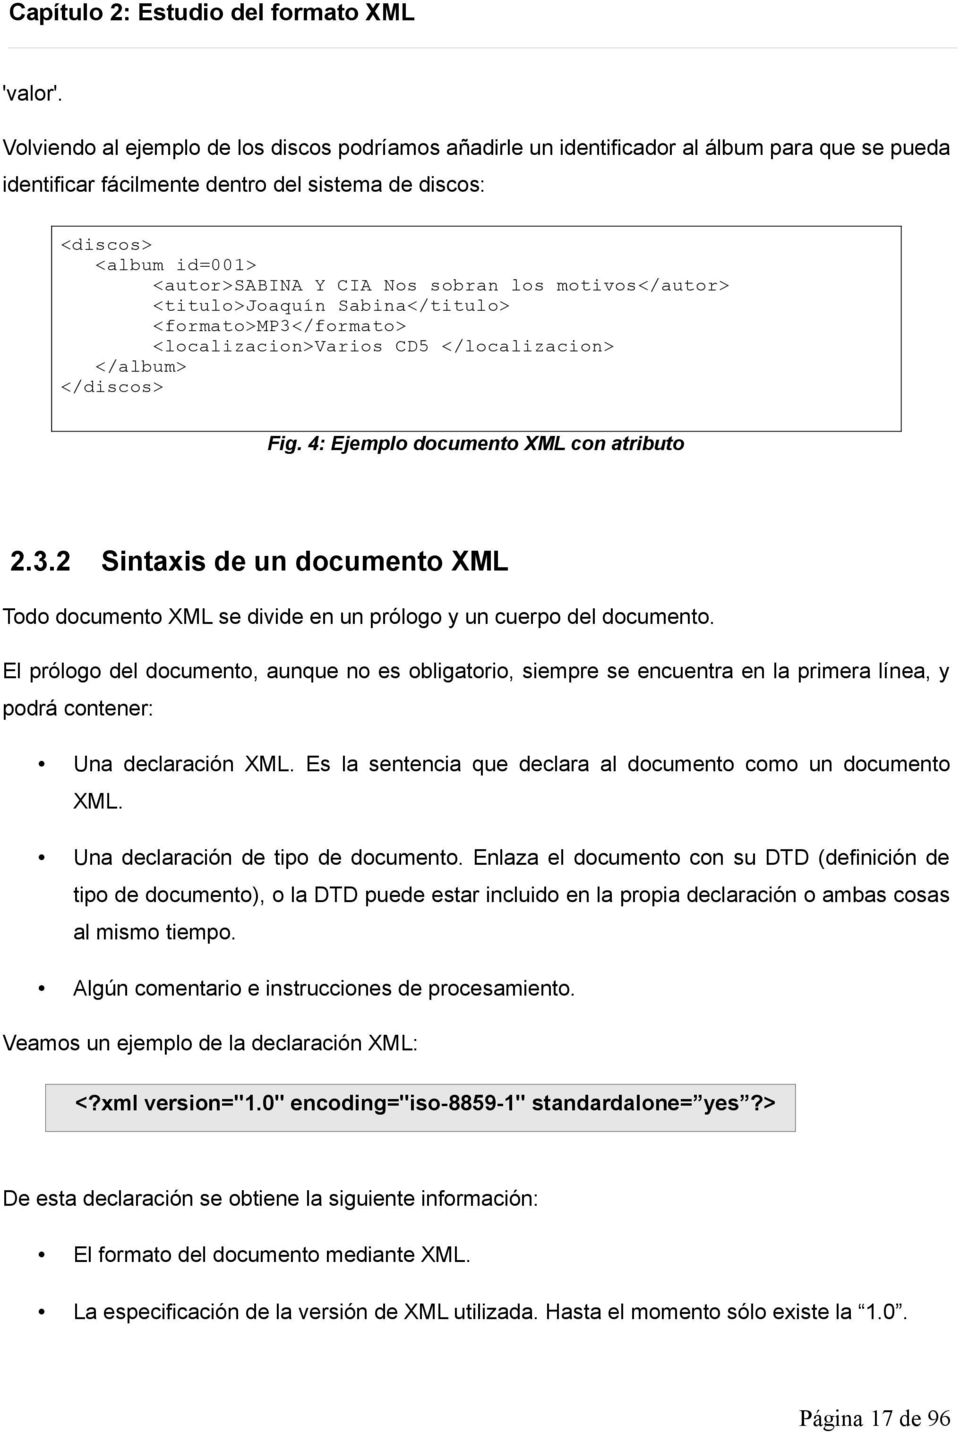 sobran los motivos</autor> <titulo>joaquín Sabina</titulo> <formato>mp3</formato> <localizacion>varios CD5 </localizacion> </album> </discos> Fig. 4: Ejemplo documento XML con atributo 2.3.2 Sintaxis de un documento XML Todo documento XML se divide en un prólogo y un cuerpo del documento.